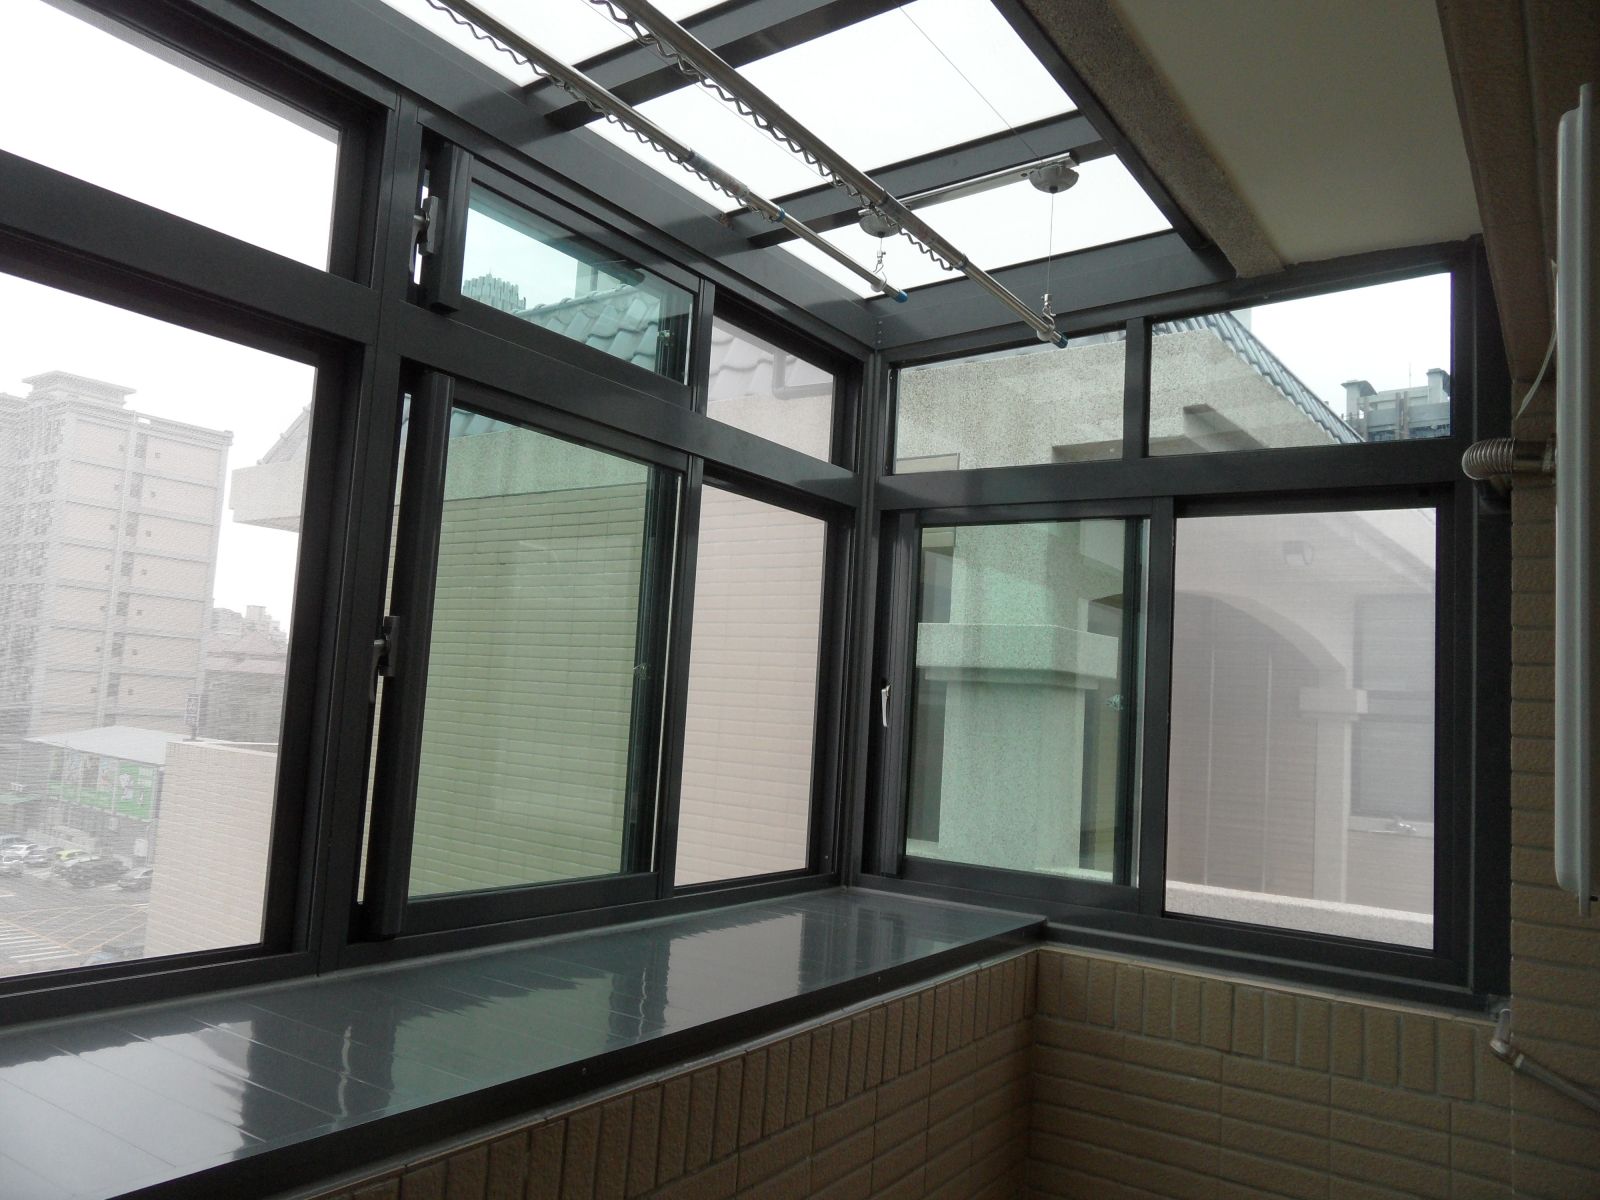 屋頂採用5+5膠合白膜玻璃,底盤面板覆蓋雙面鋁板室內屋頂附贈一組手搖式升降晾衣架